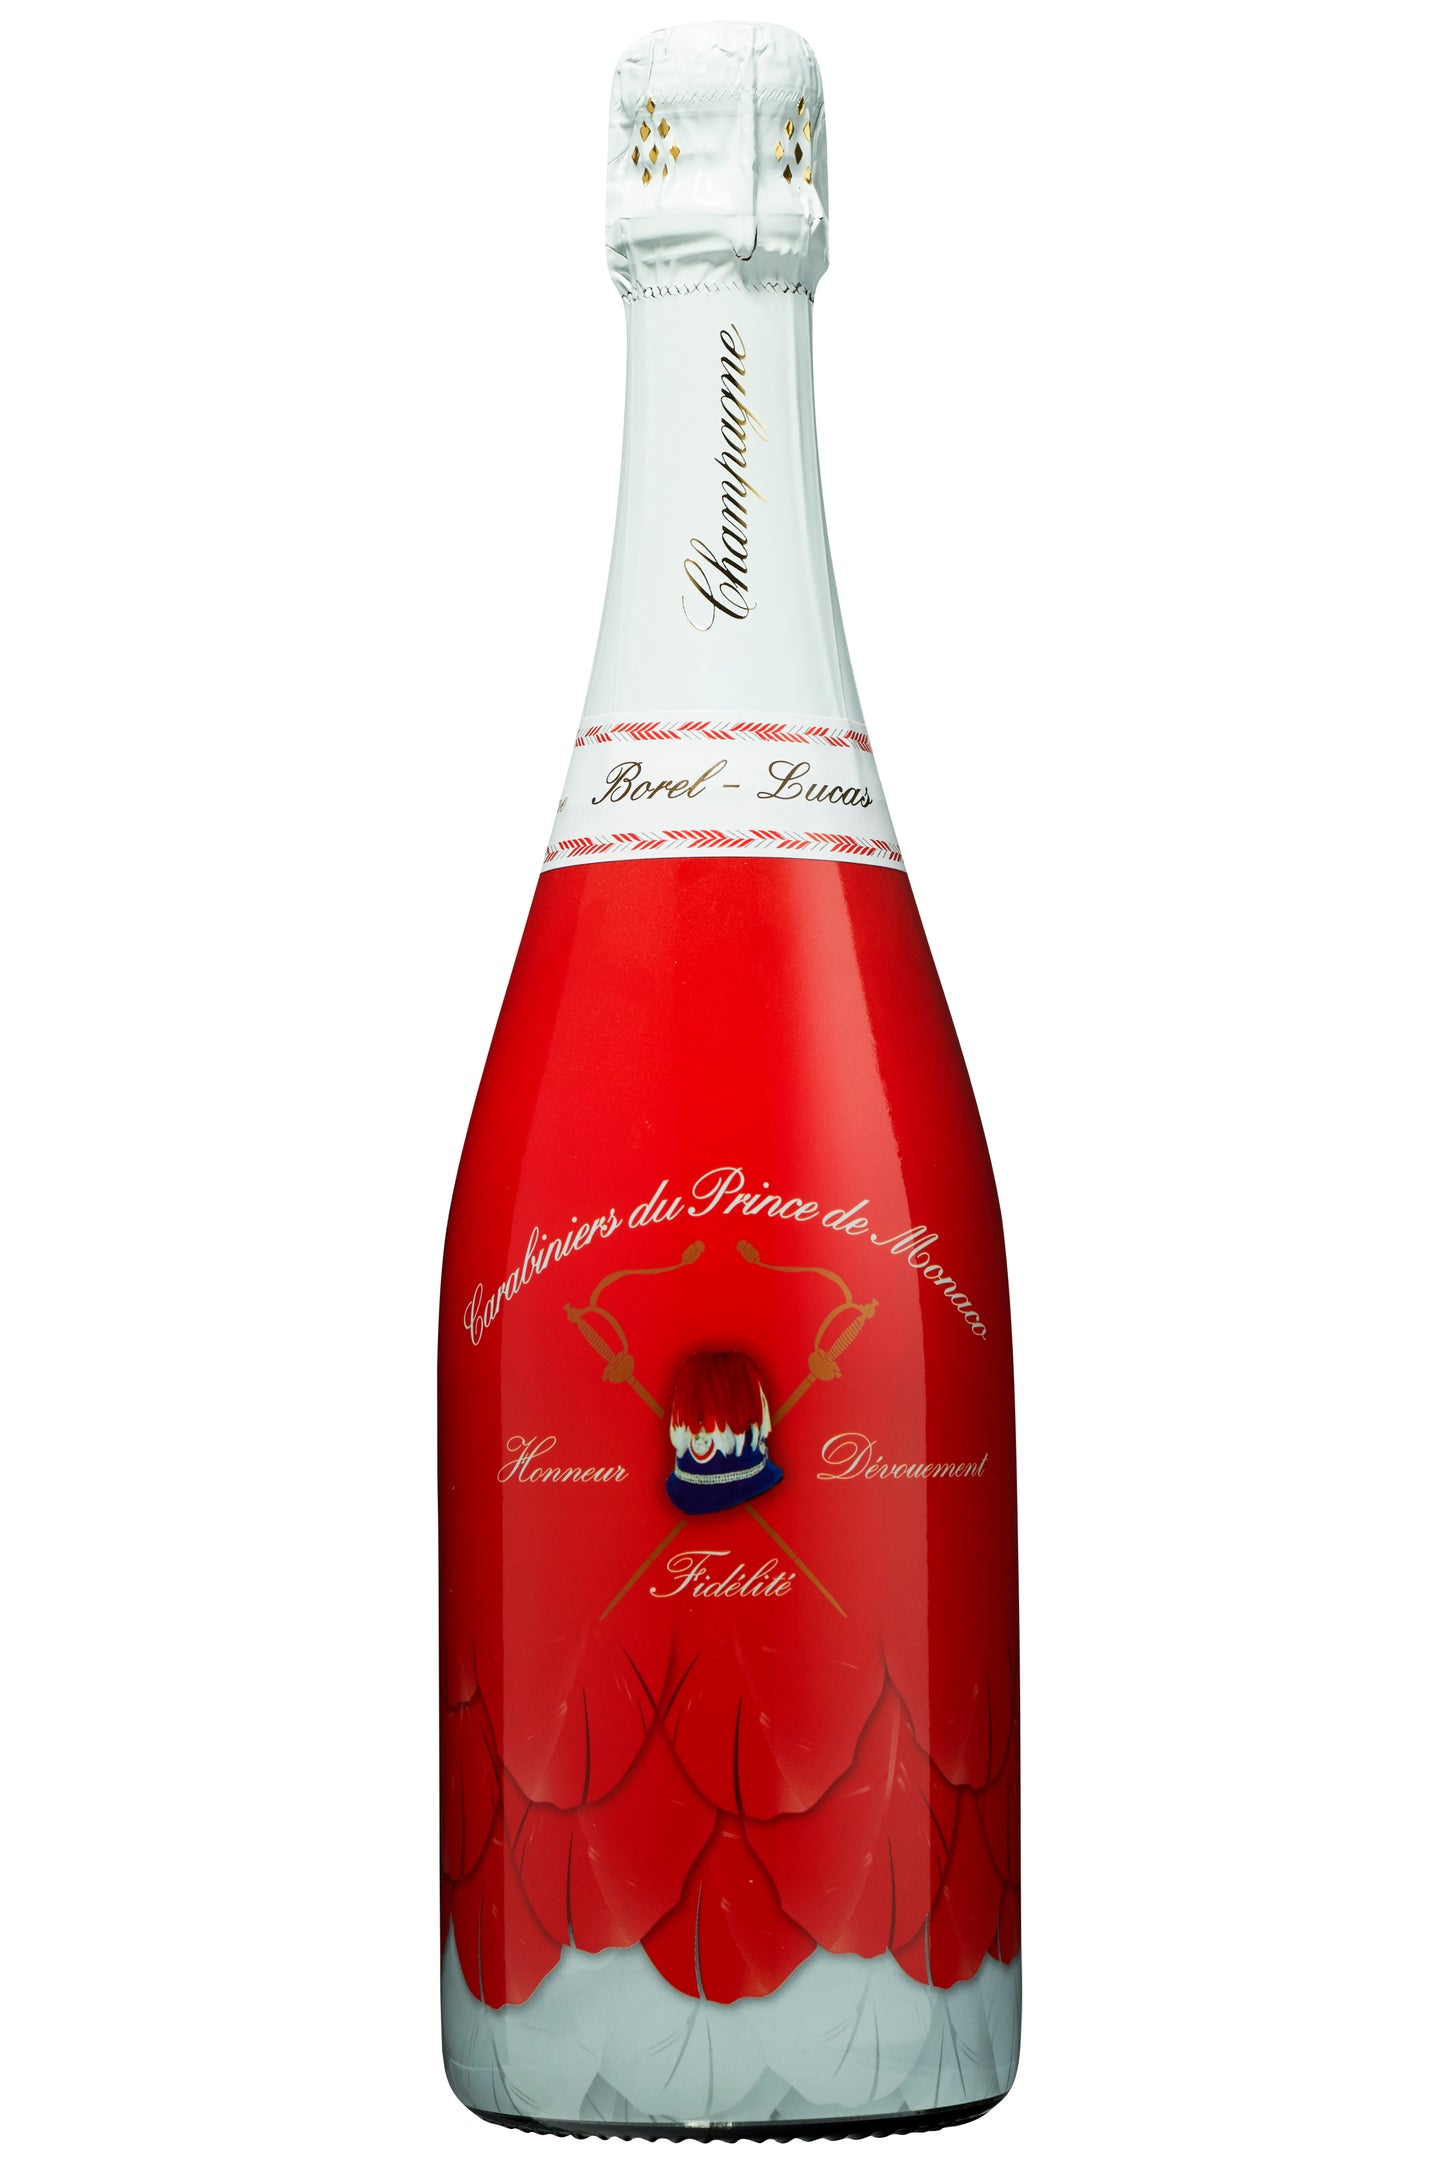 Champagne Borel-Lucas Cuvee Carabiniers du Prince de Monaco